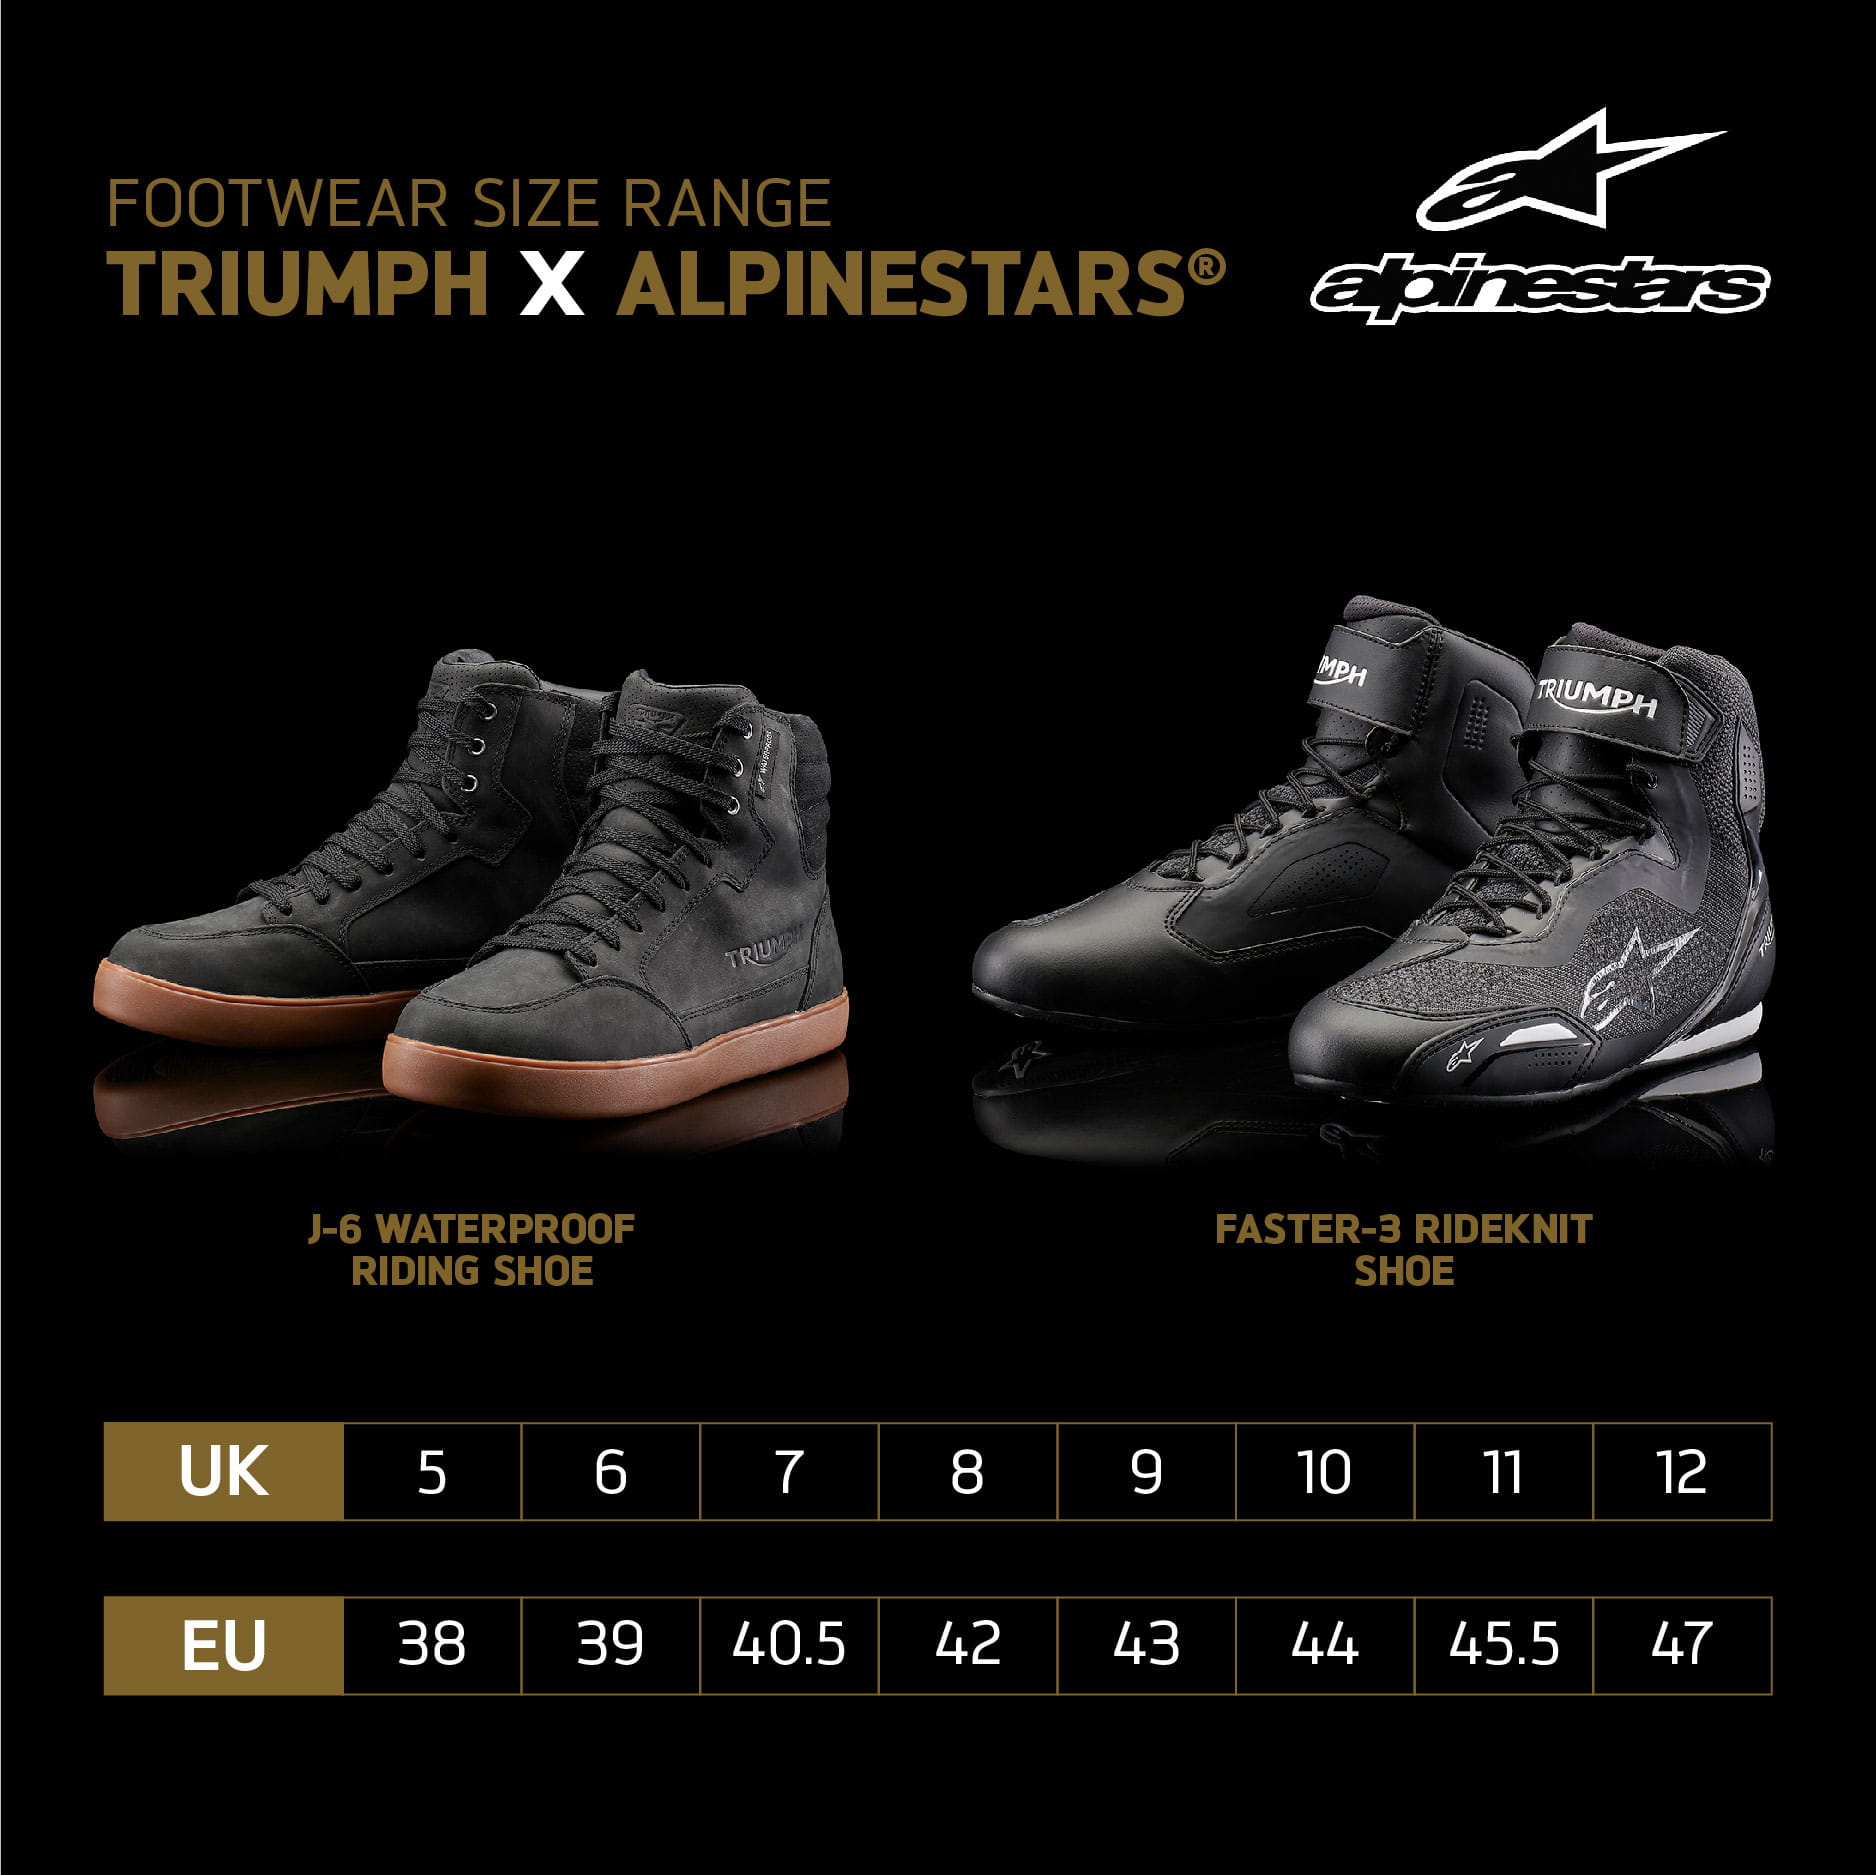 Triumph x Alpinestars® - Chaussures Faster-3 Rideknit